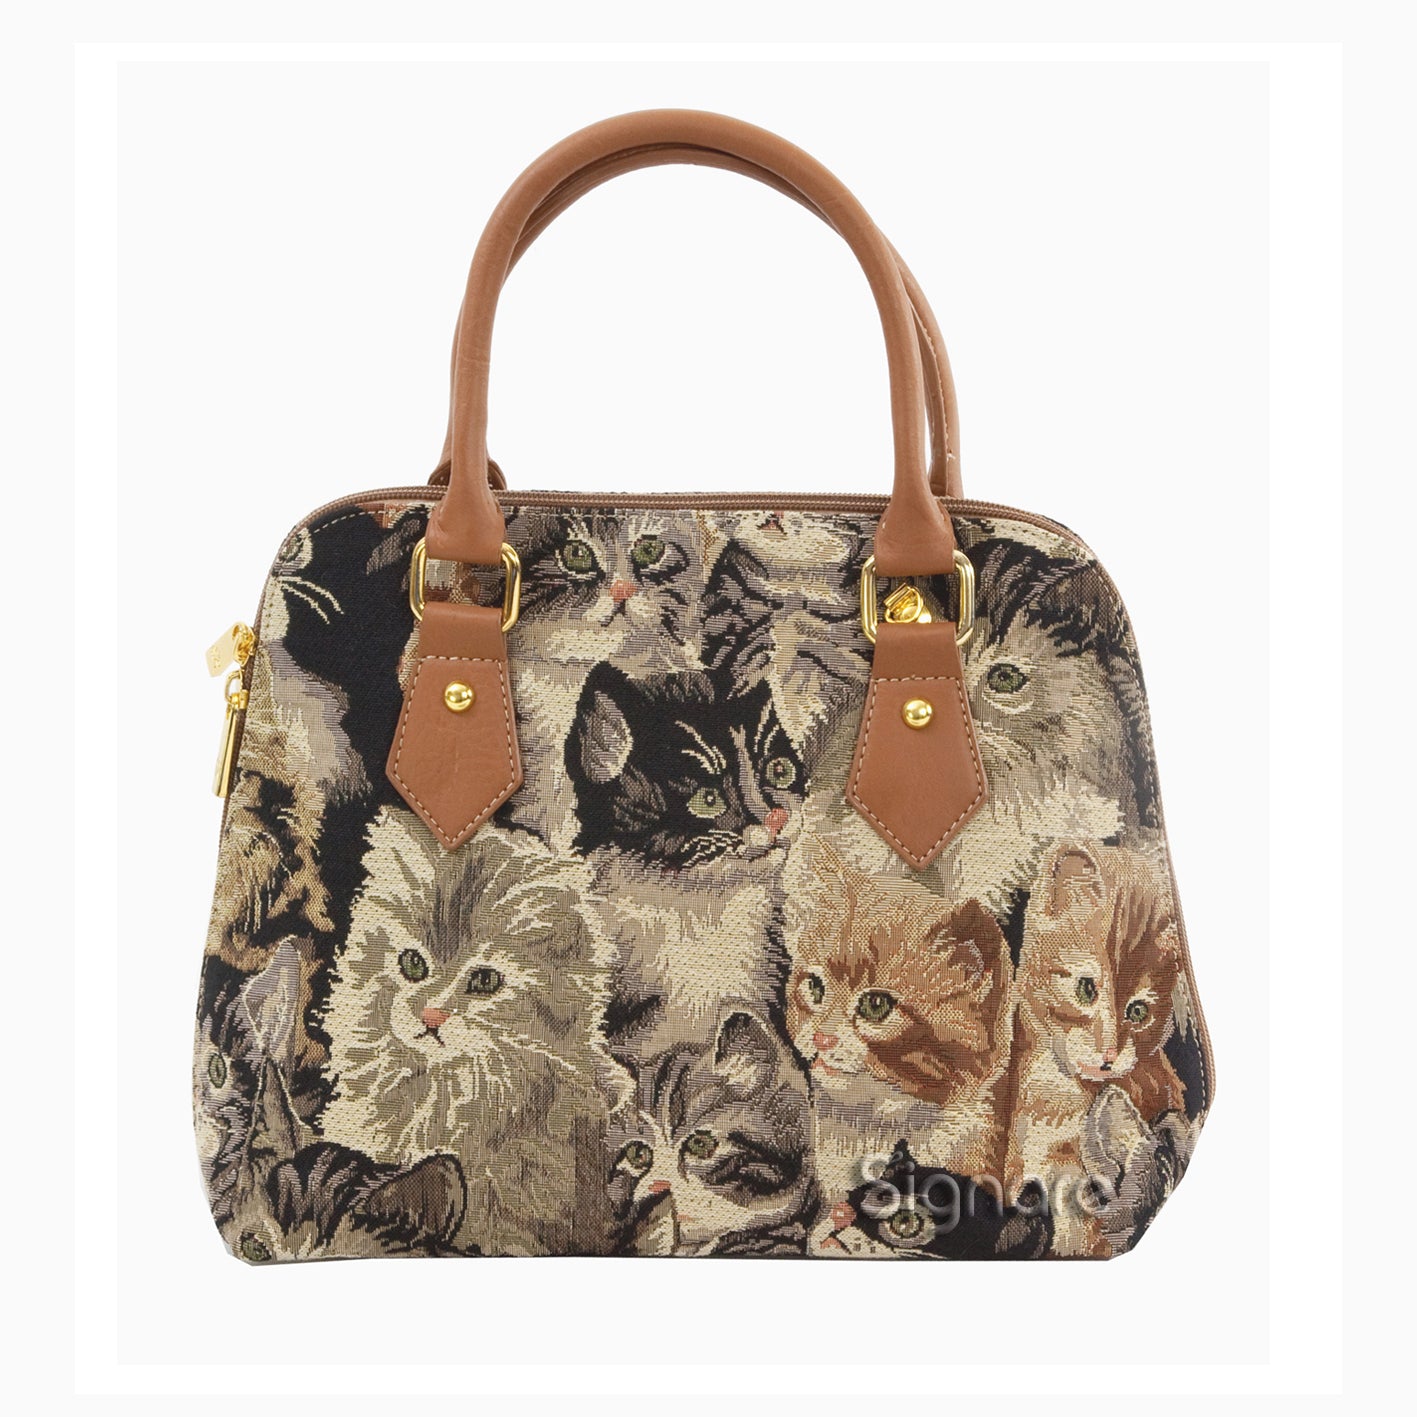 CONV-CAT | Cat Convertible Top Handle Purse Handbag - www.signareusa.com